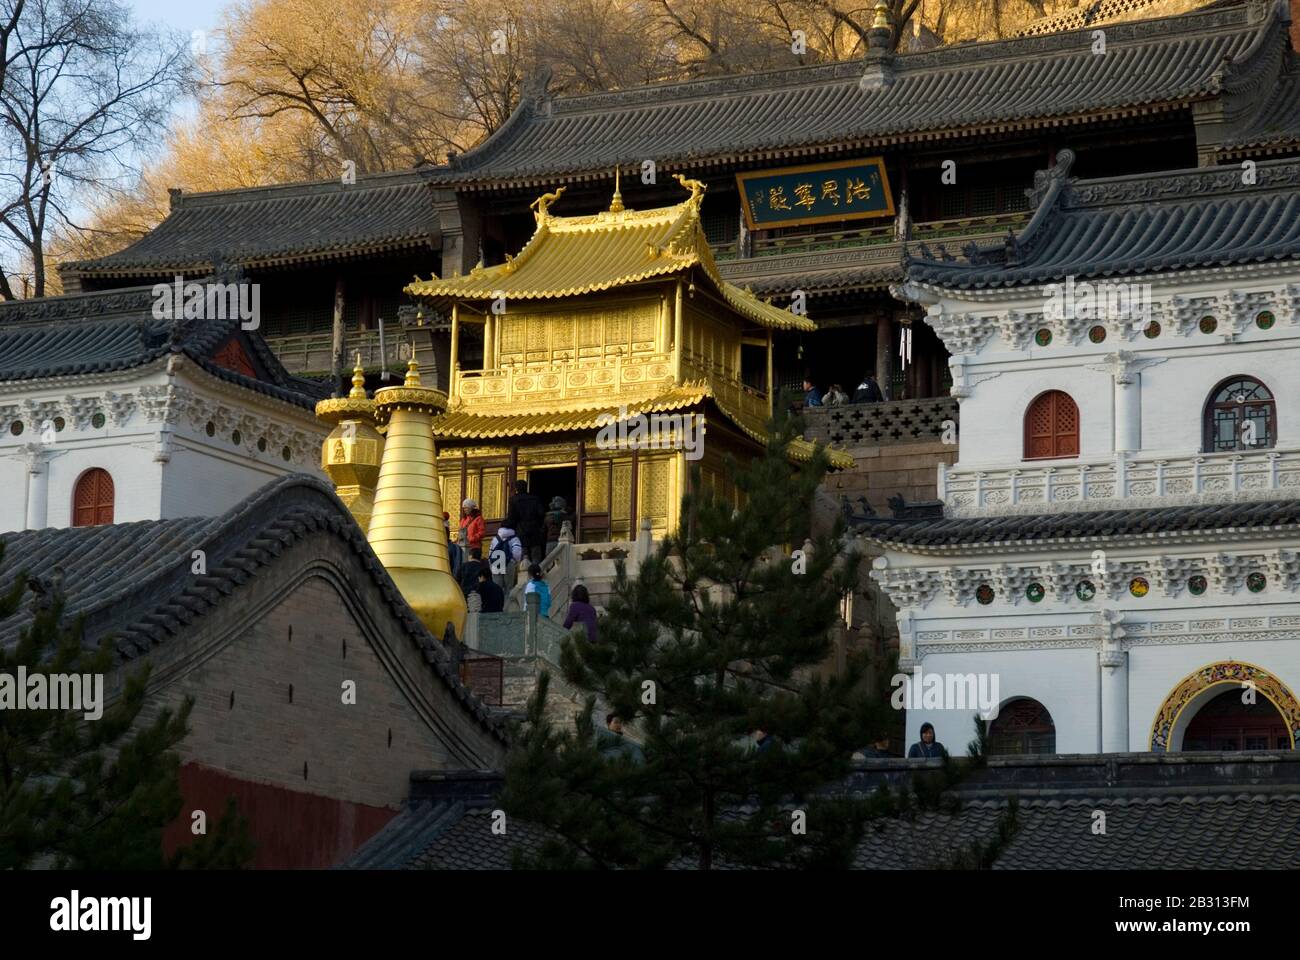 Temple De Xiantong, Wutaishan, Province De Shanxi, Chine. La salle de bronze dorée, coulée en 1606, réplique un pavillon de la dynastie Ming. Banque D'Images